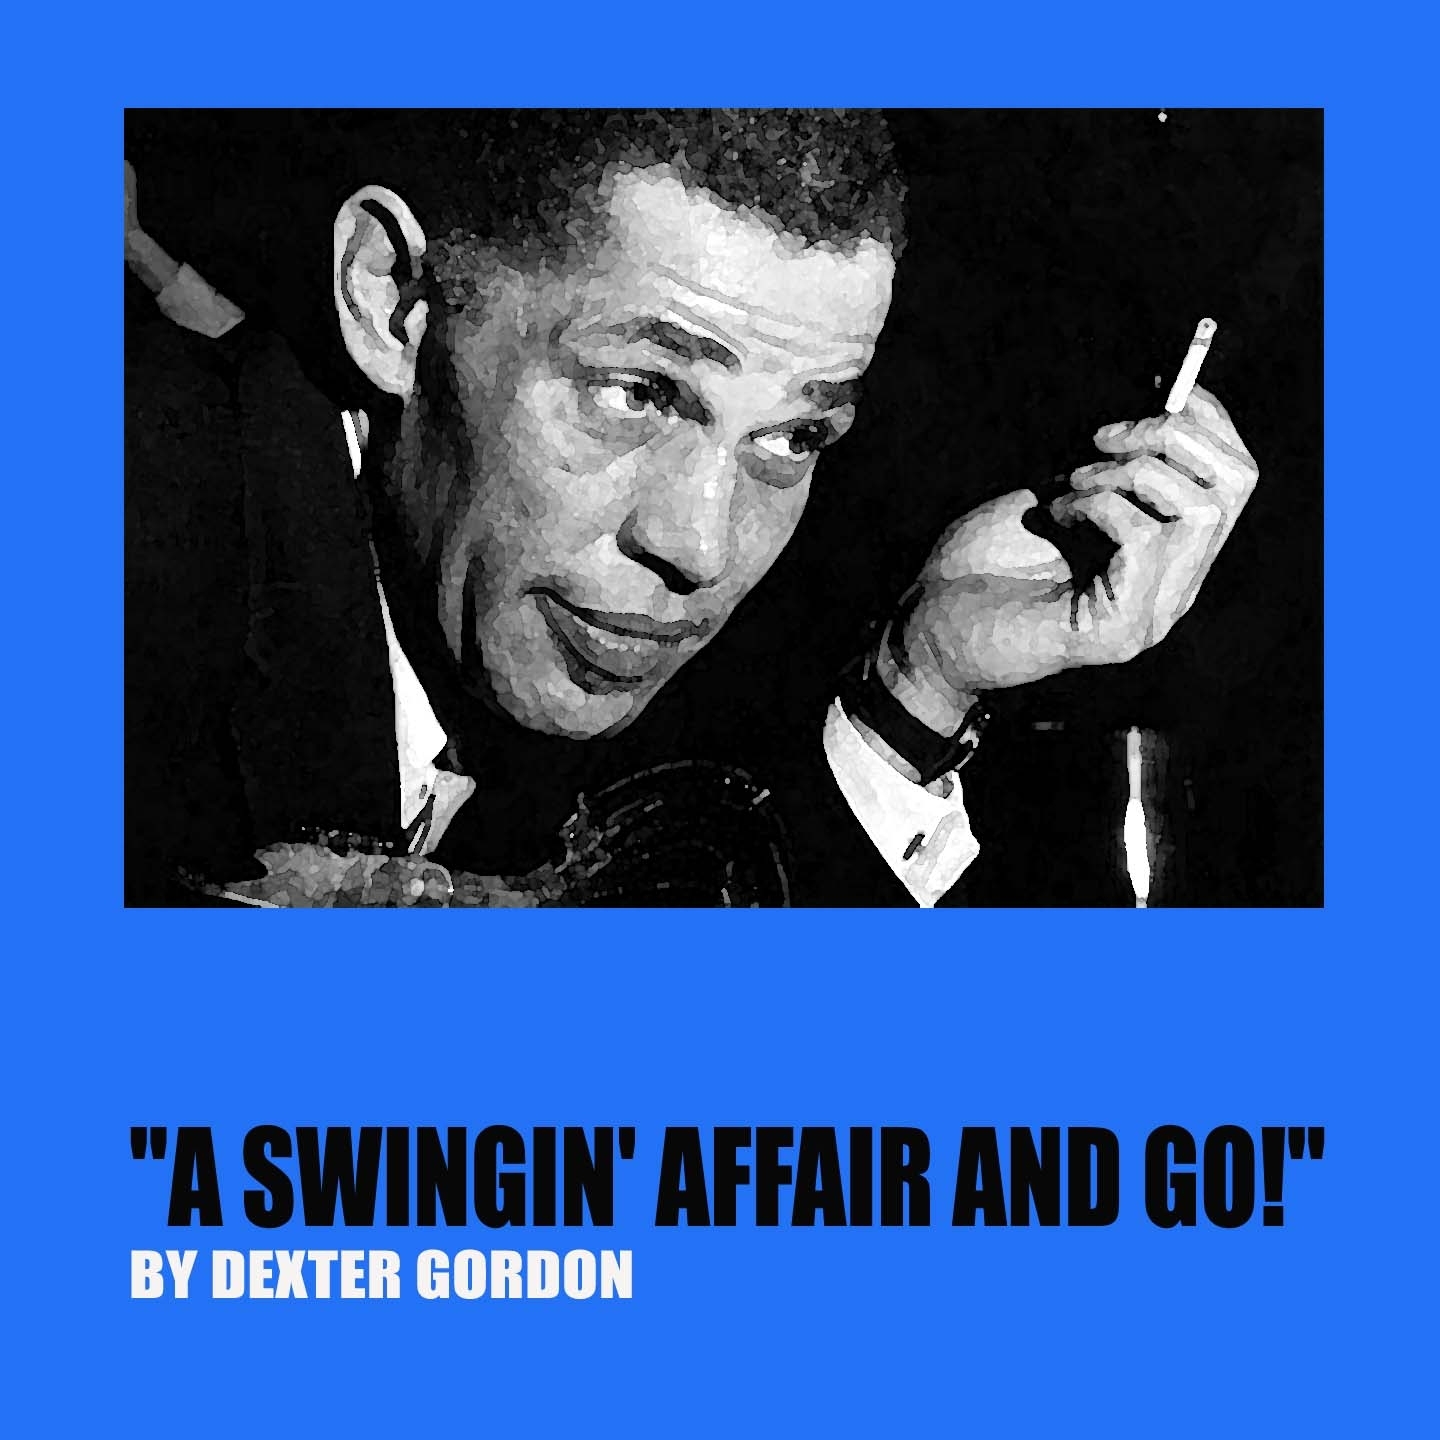 A Swingin' Affair and Go!